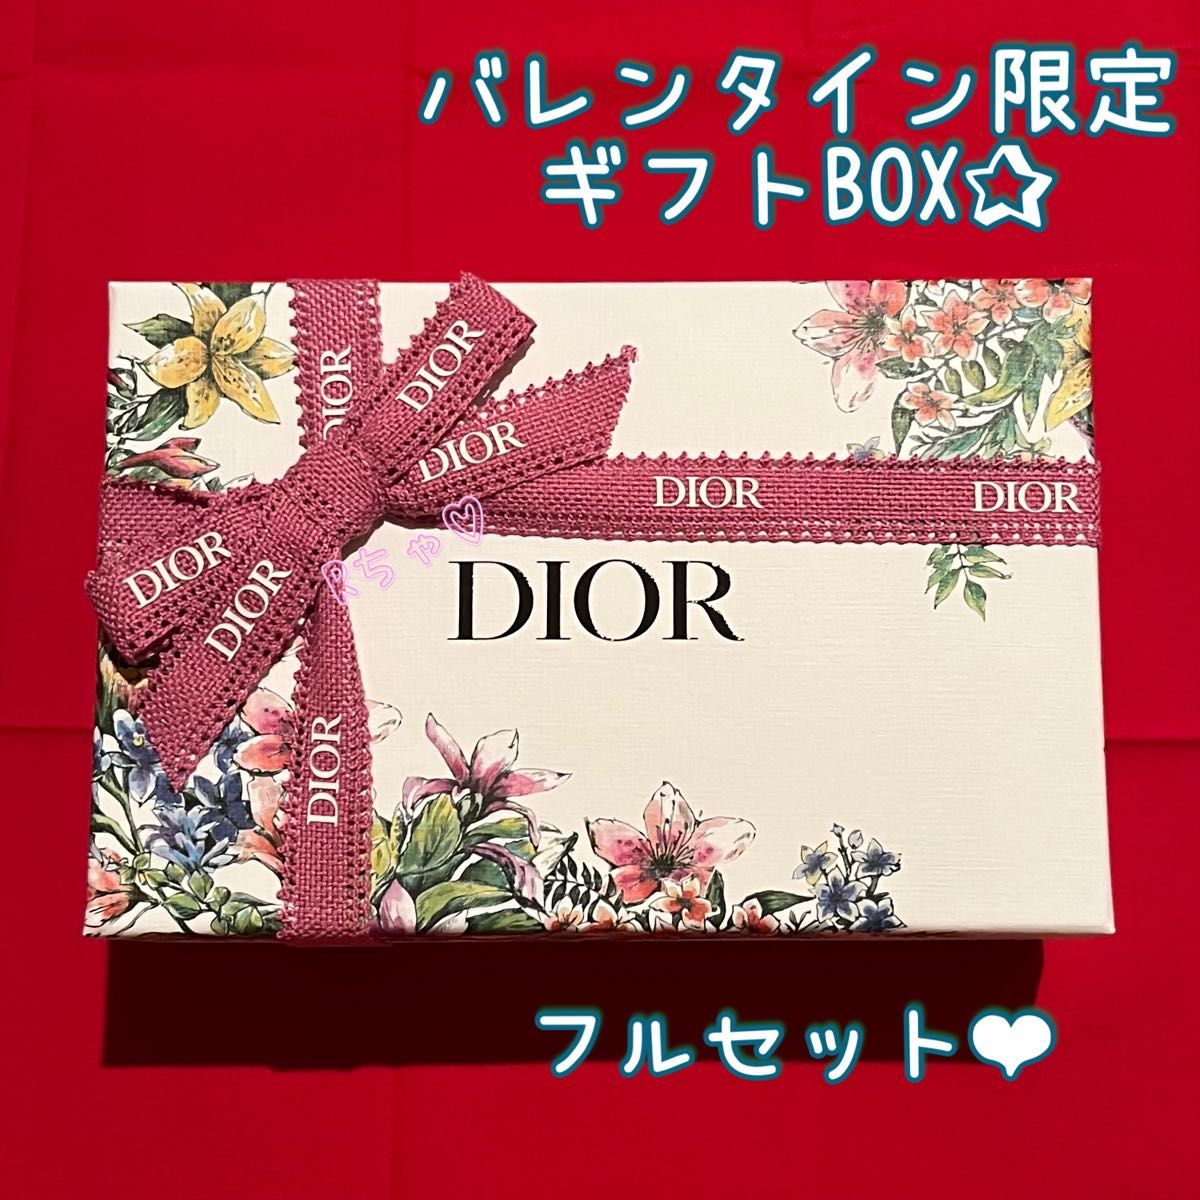 ディオール Dior バレンタイン限定 ギフトボックス プレゼントボックス ラッピングボックス BOX 箱 リボン ノベルティ